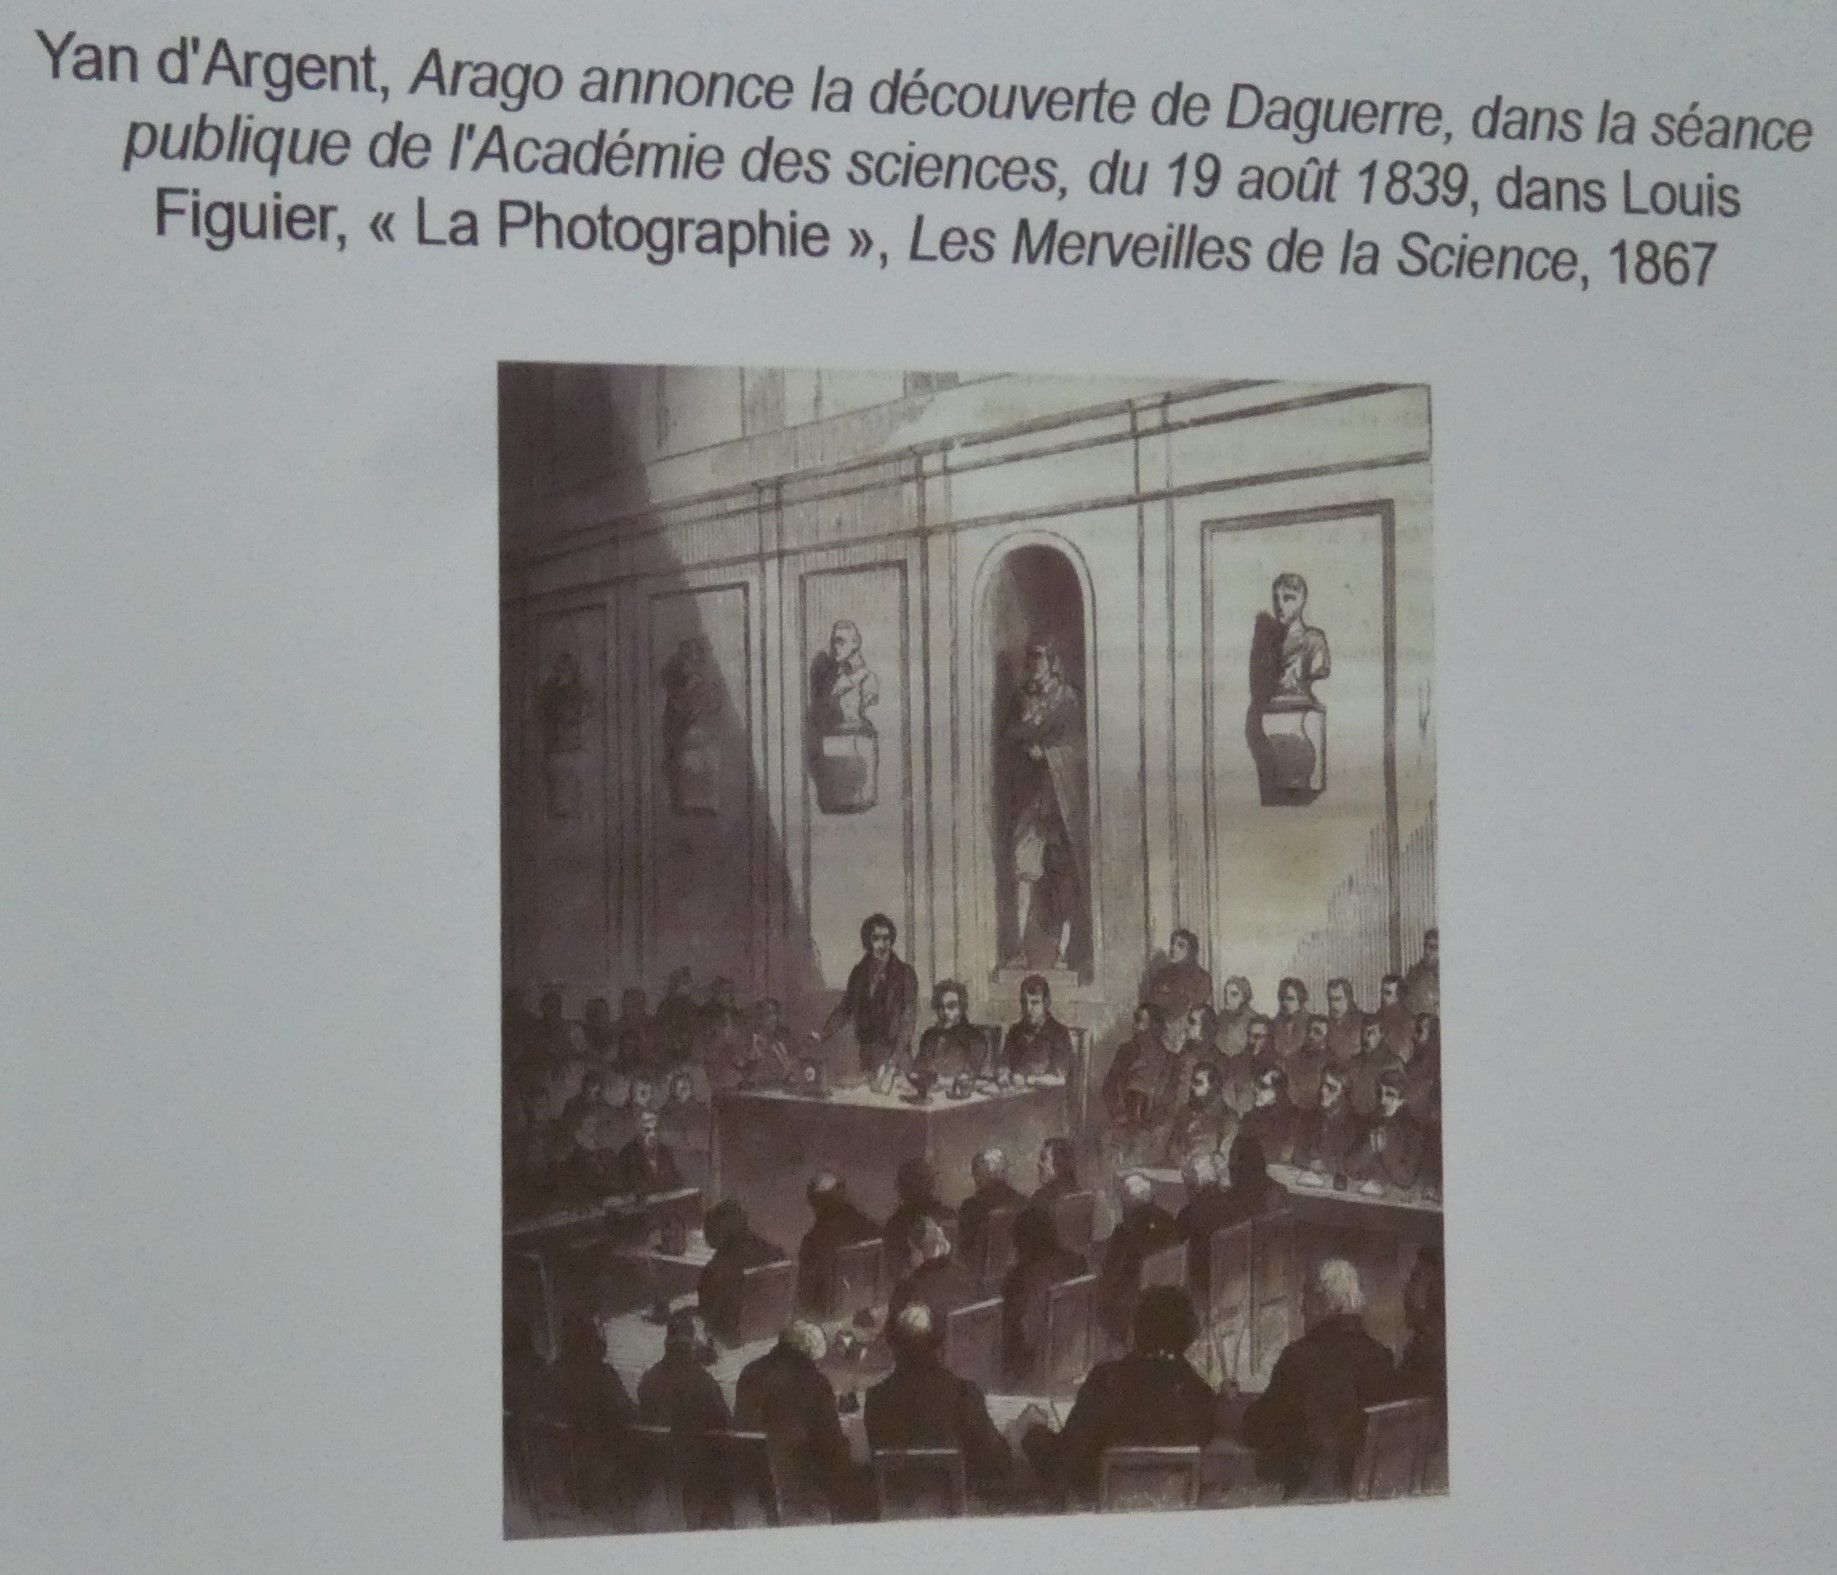 Discours du député Arago qui accompagne l’achat du brevet par la France en 1839